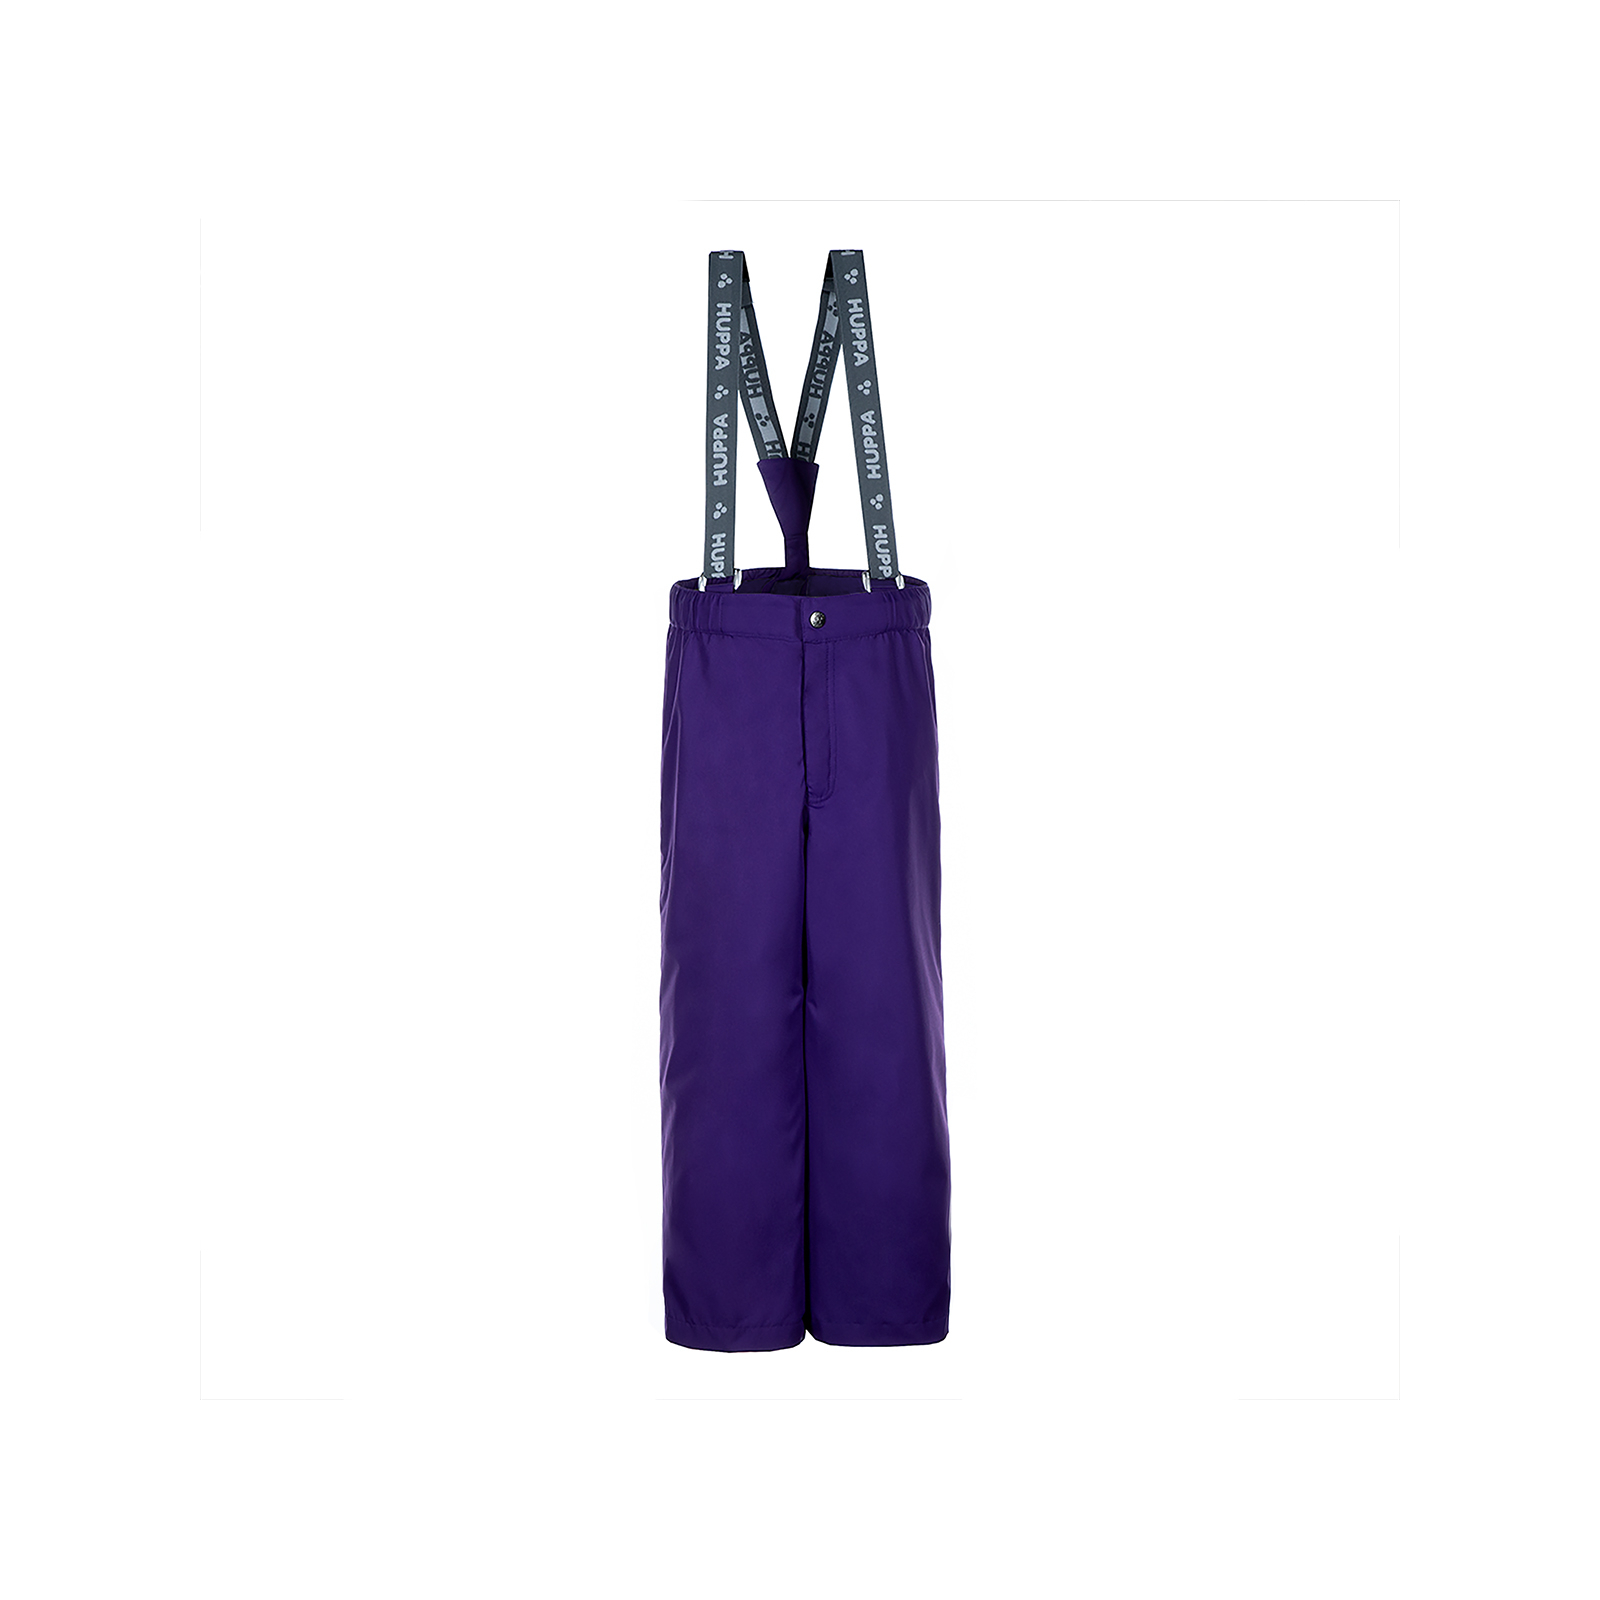 Комплект верхней одежды Huppa YONNE 1 41260114 лилoвый с принтом/тёмно-лилoвый 122 (4741468764375) изображение 4